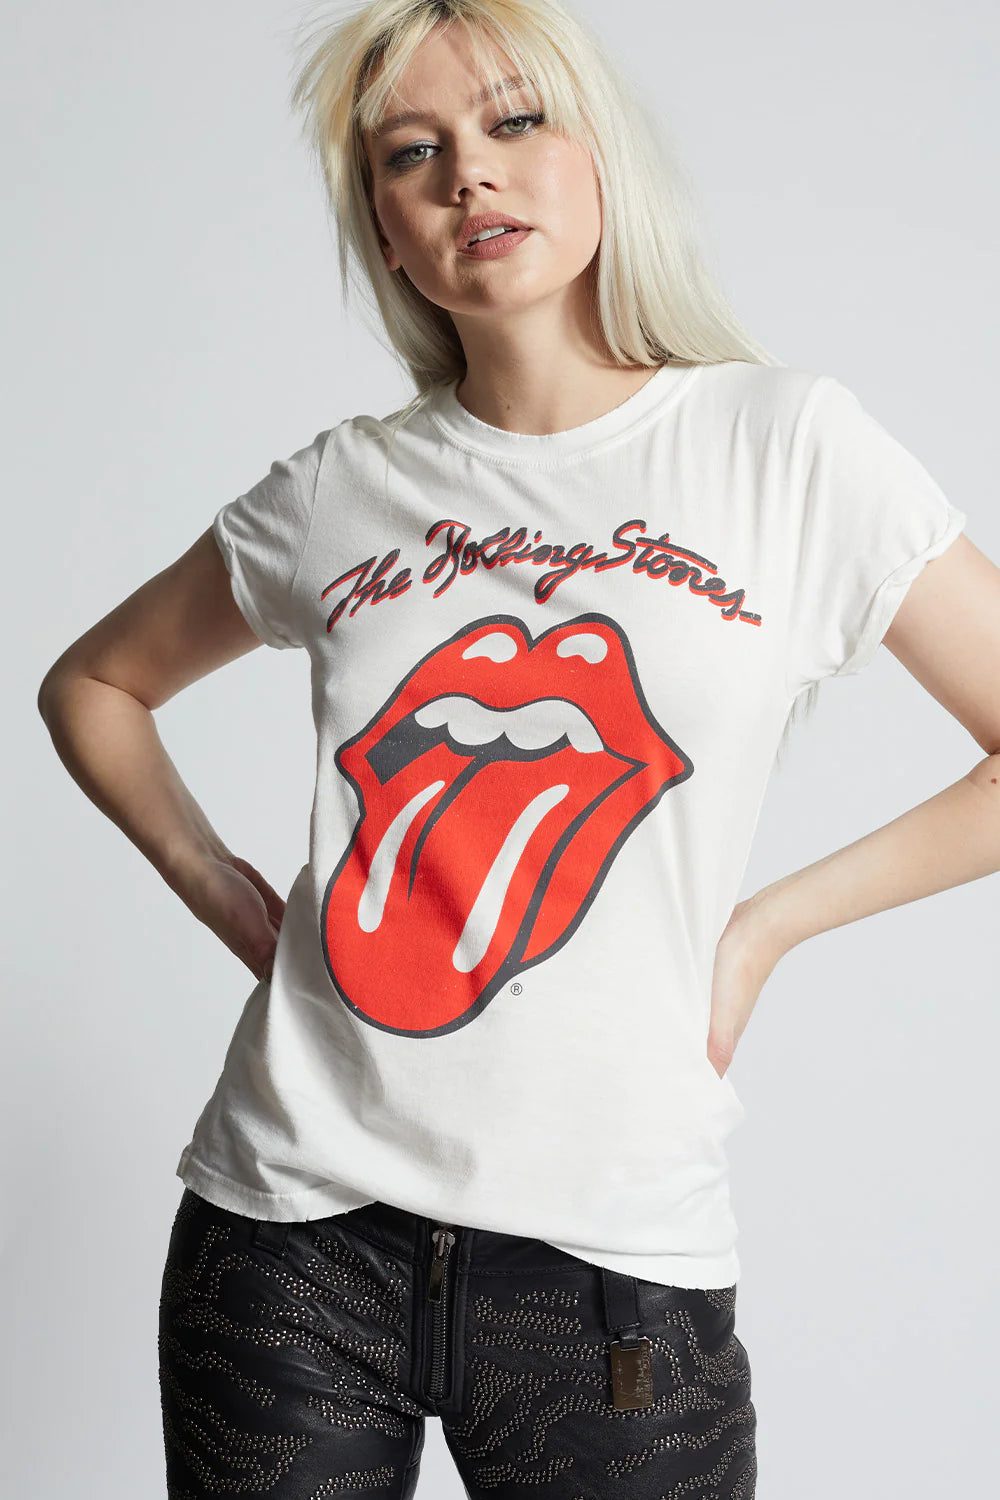 Rolling Stones Tee - Live In Concert